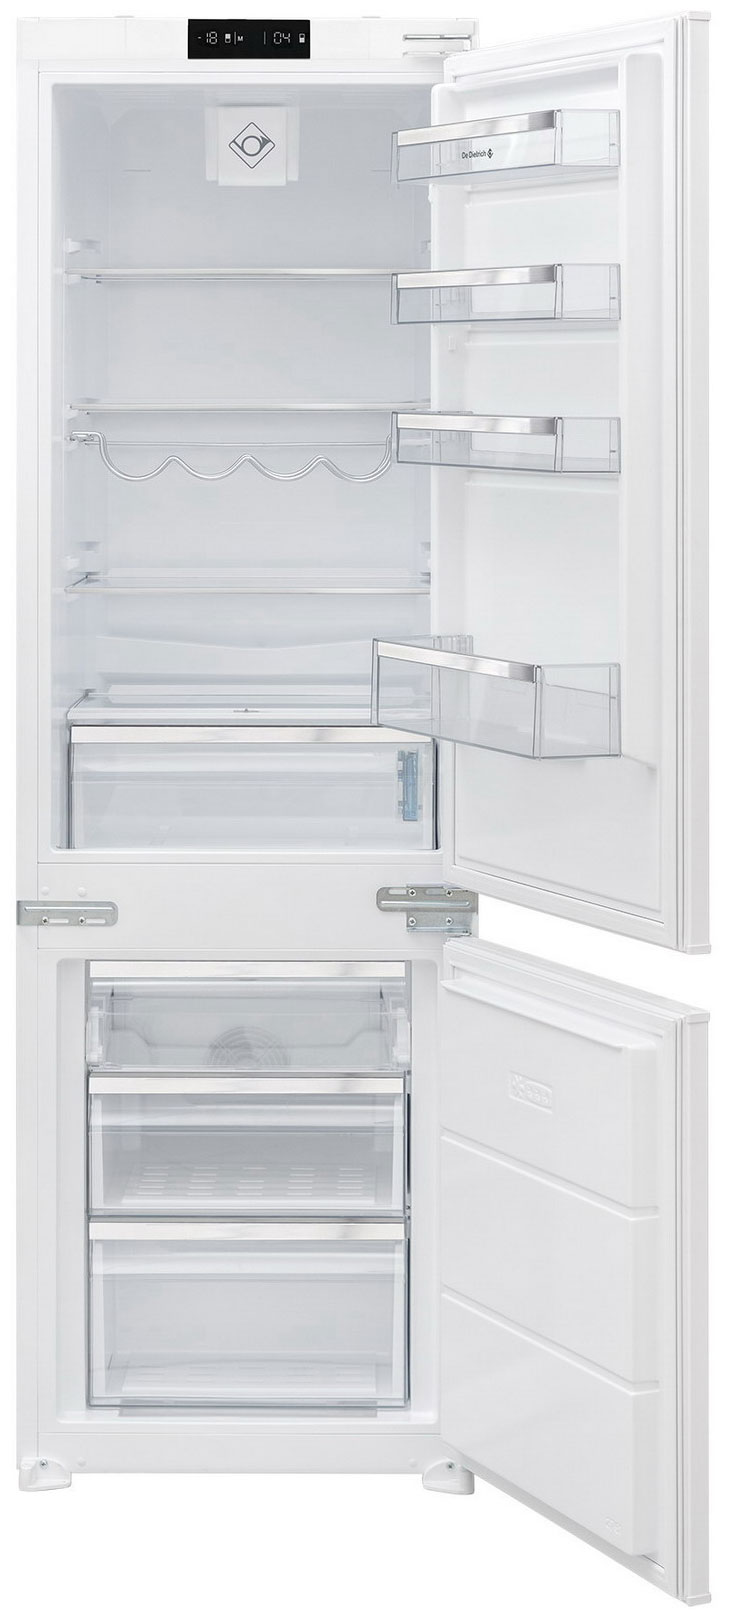 Встраиваемый холодильник De Dietrich DRC1775EN белый встраиваемый двухкамерный холодильник de dietrich drc1775en